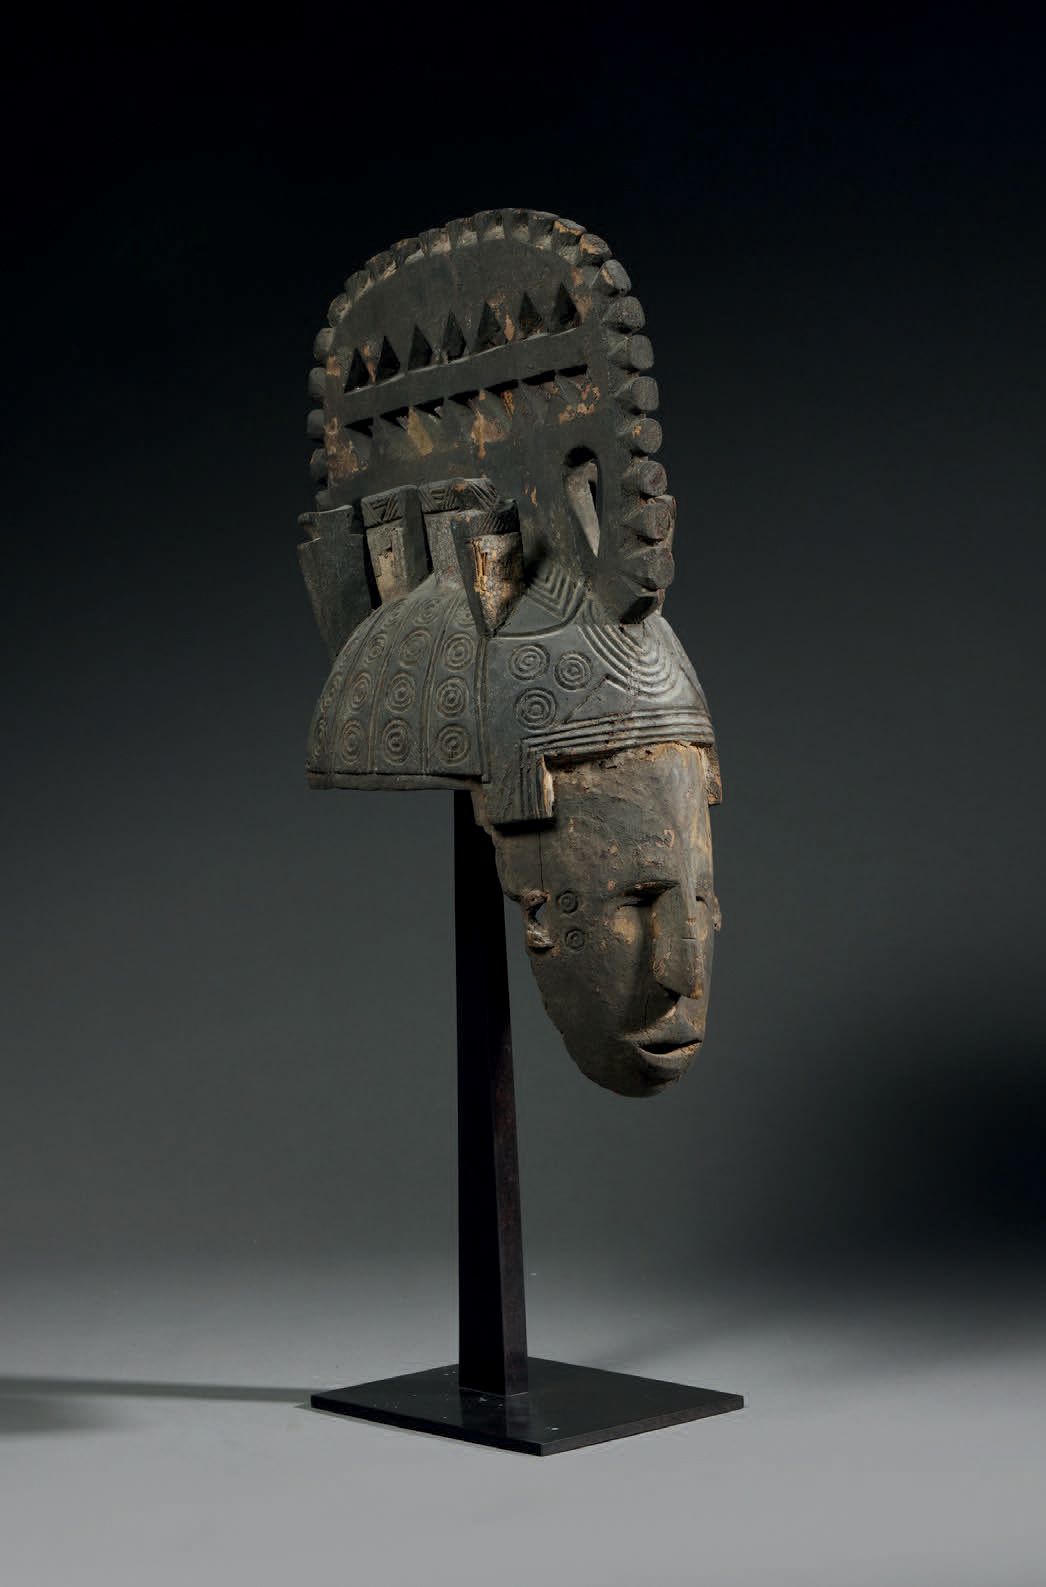 Null Igbo Mmwo Mask
Nigeria
Legno
H. 45 cm
Maschera-healm raffigurante un volto &hellip;